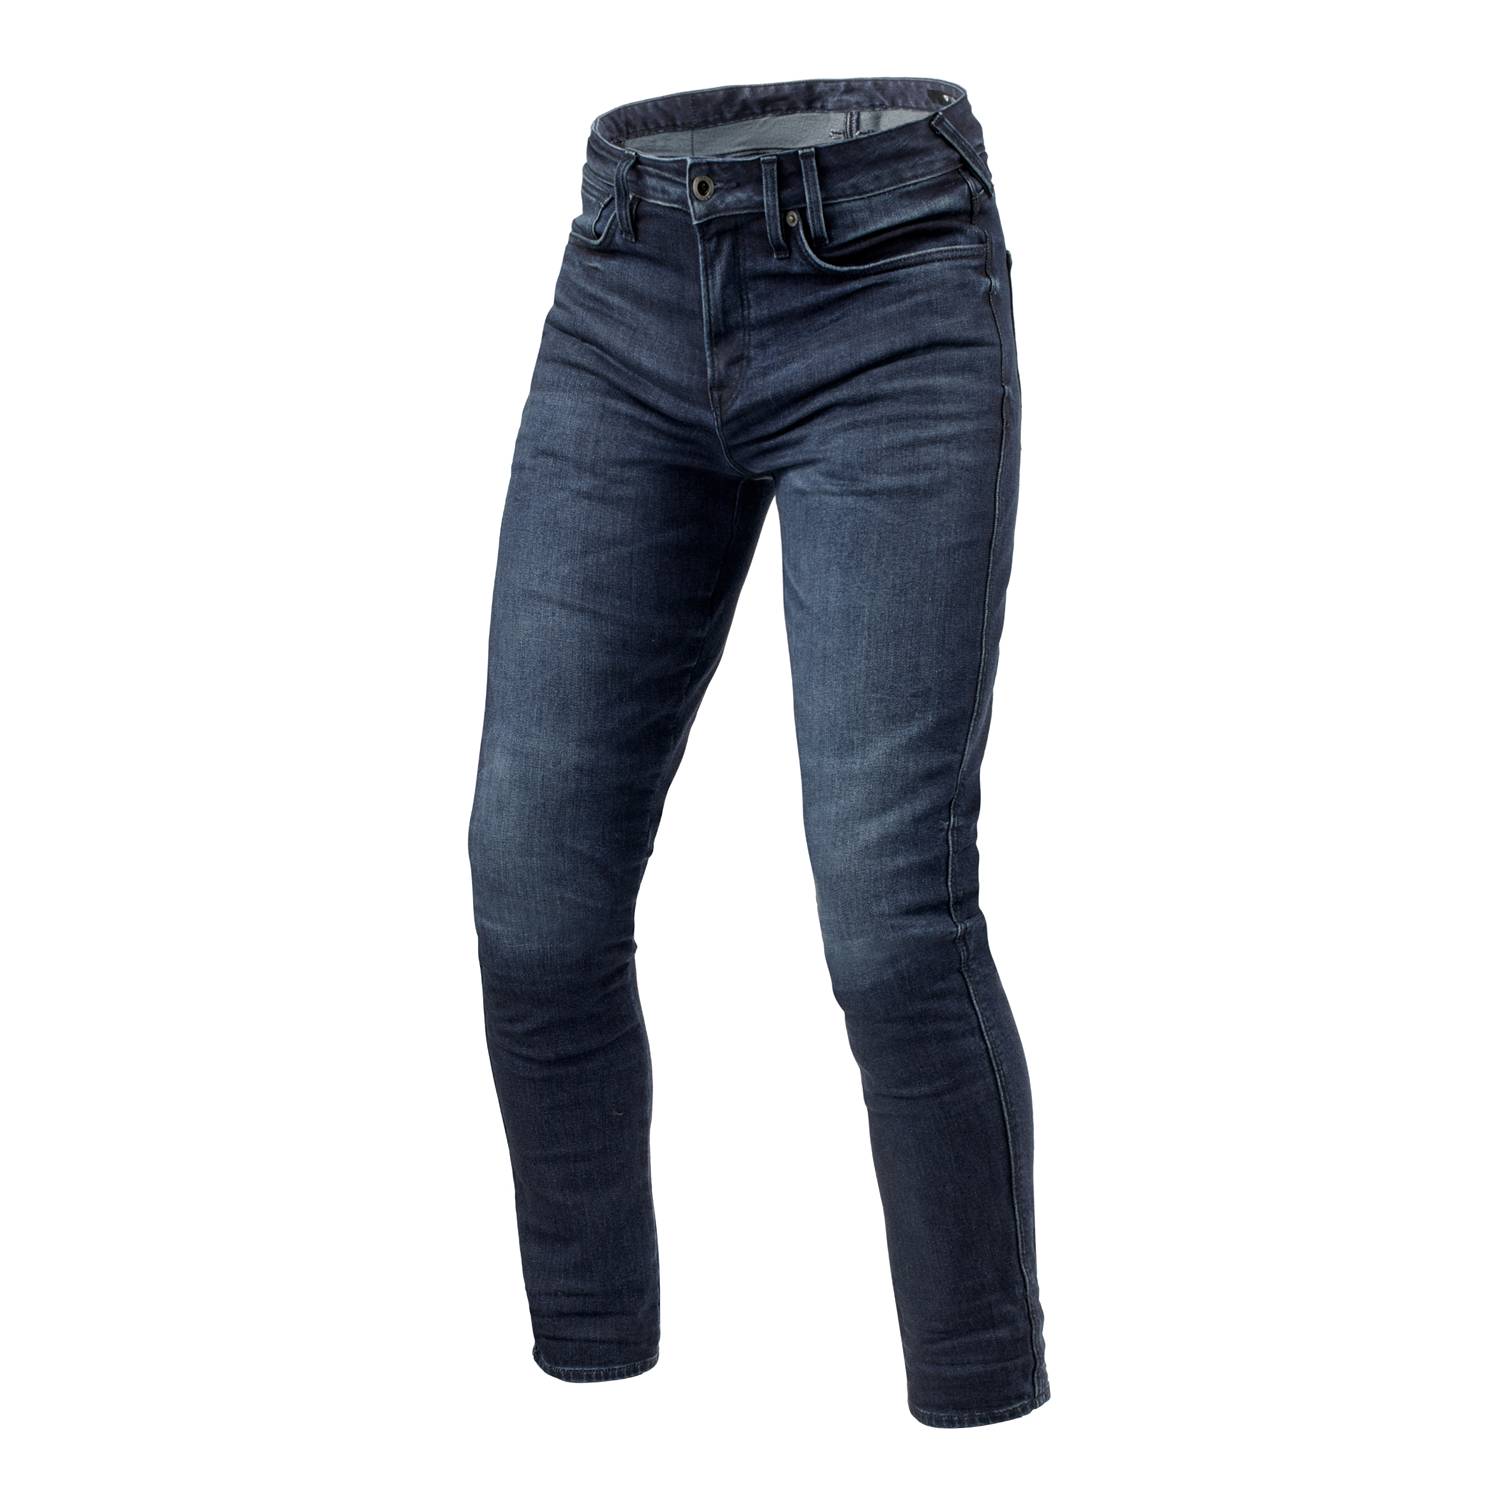 Image of REV'IT! Jeans Carlin SK Dark Blue Used L36 Motorcycle Jeans Size L36/W31 EN